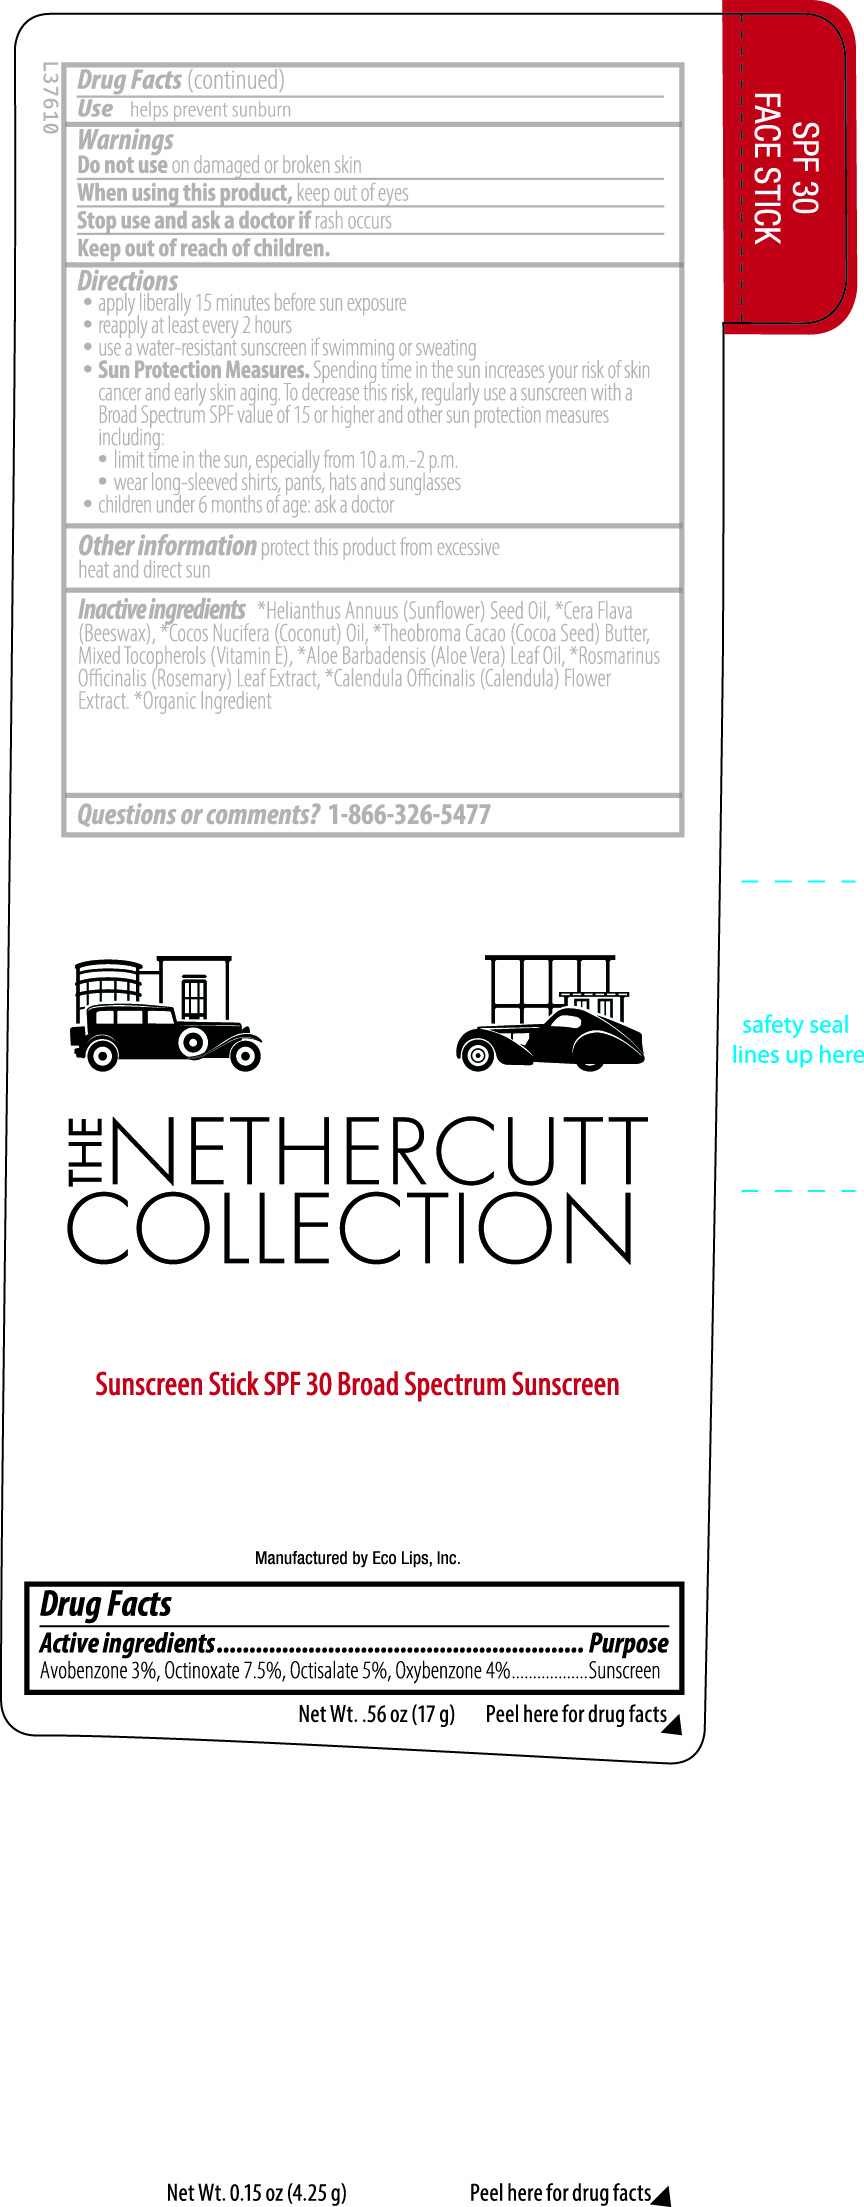 Nethercutt Collection Sunscreen Stick SPF 30 Broad Spectrum Sunscreen .56 oz label